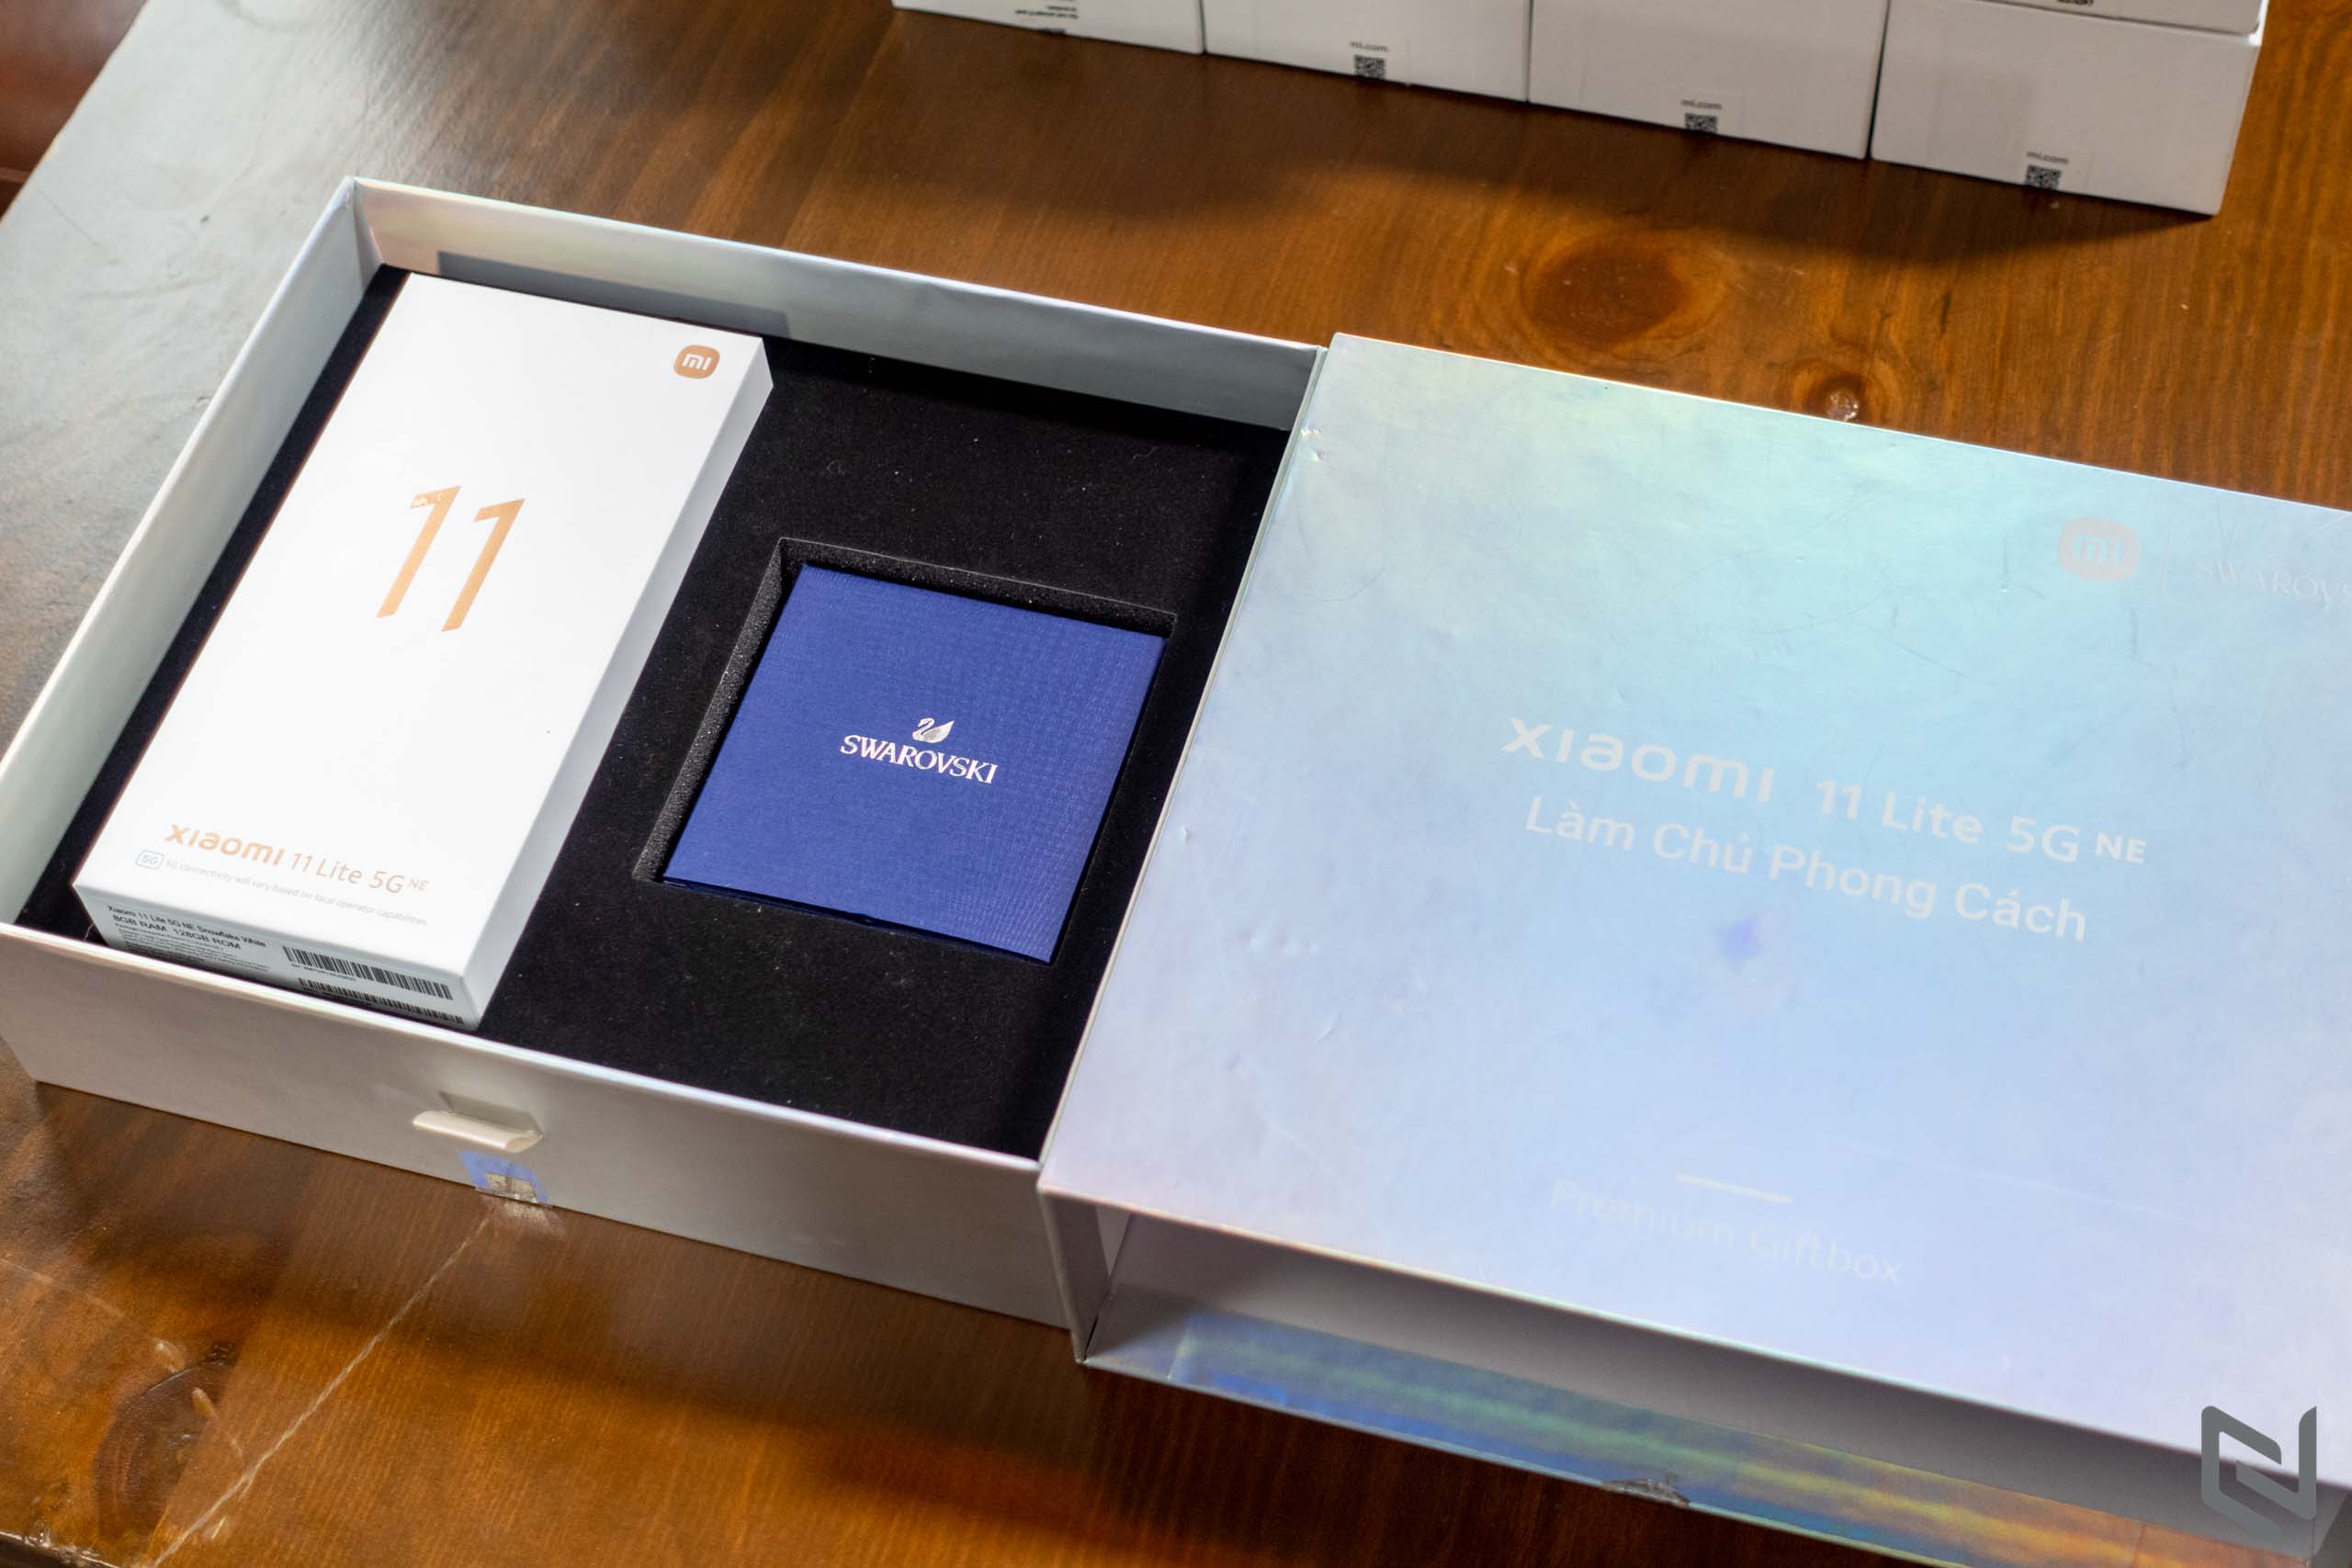 Mở hộp sản phẩm đặc biệt Xiaomi 11 Lite 5G NE cùng dây chuyền Swarovski tinh tế